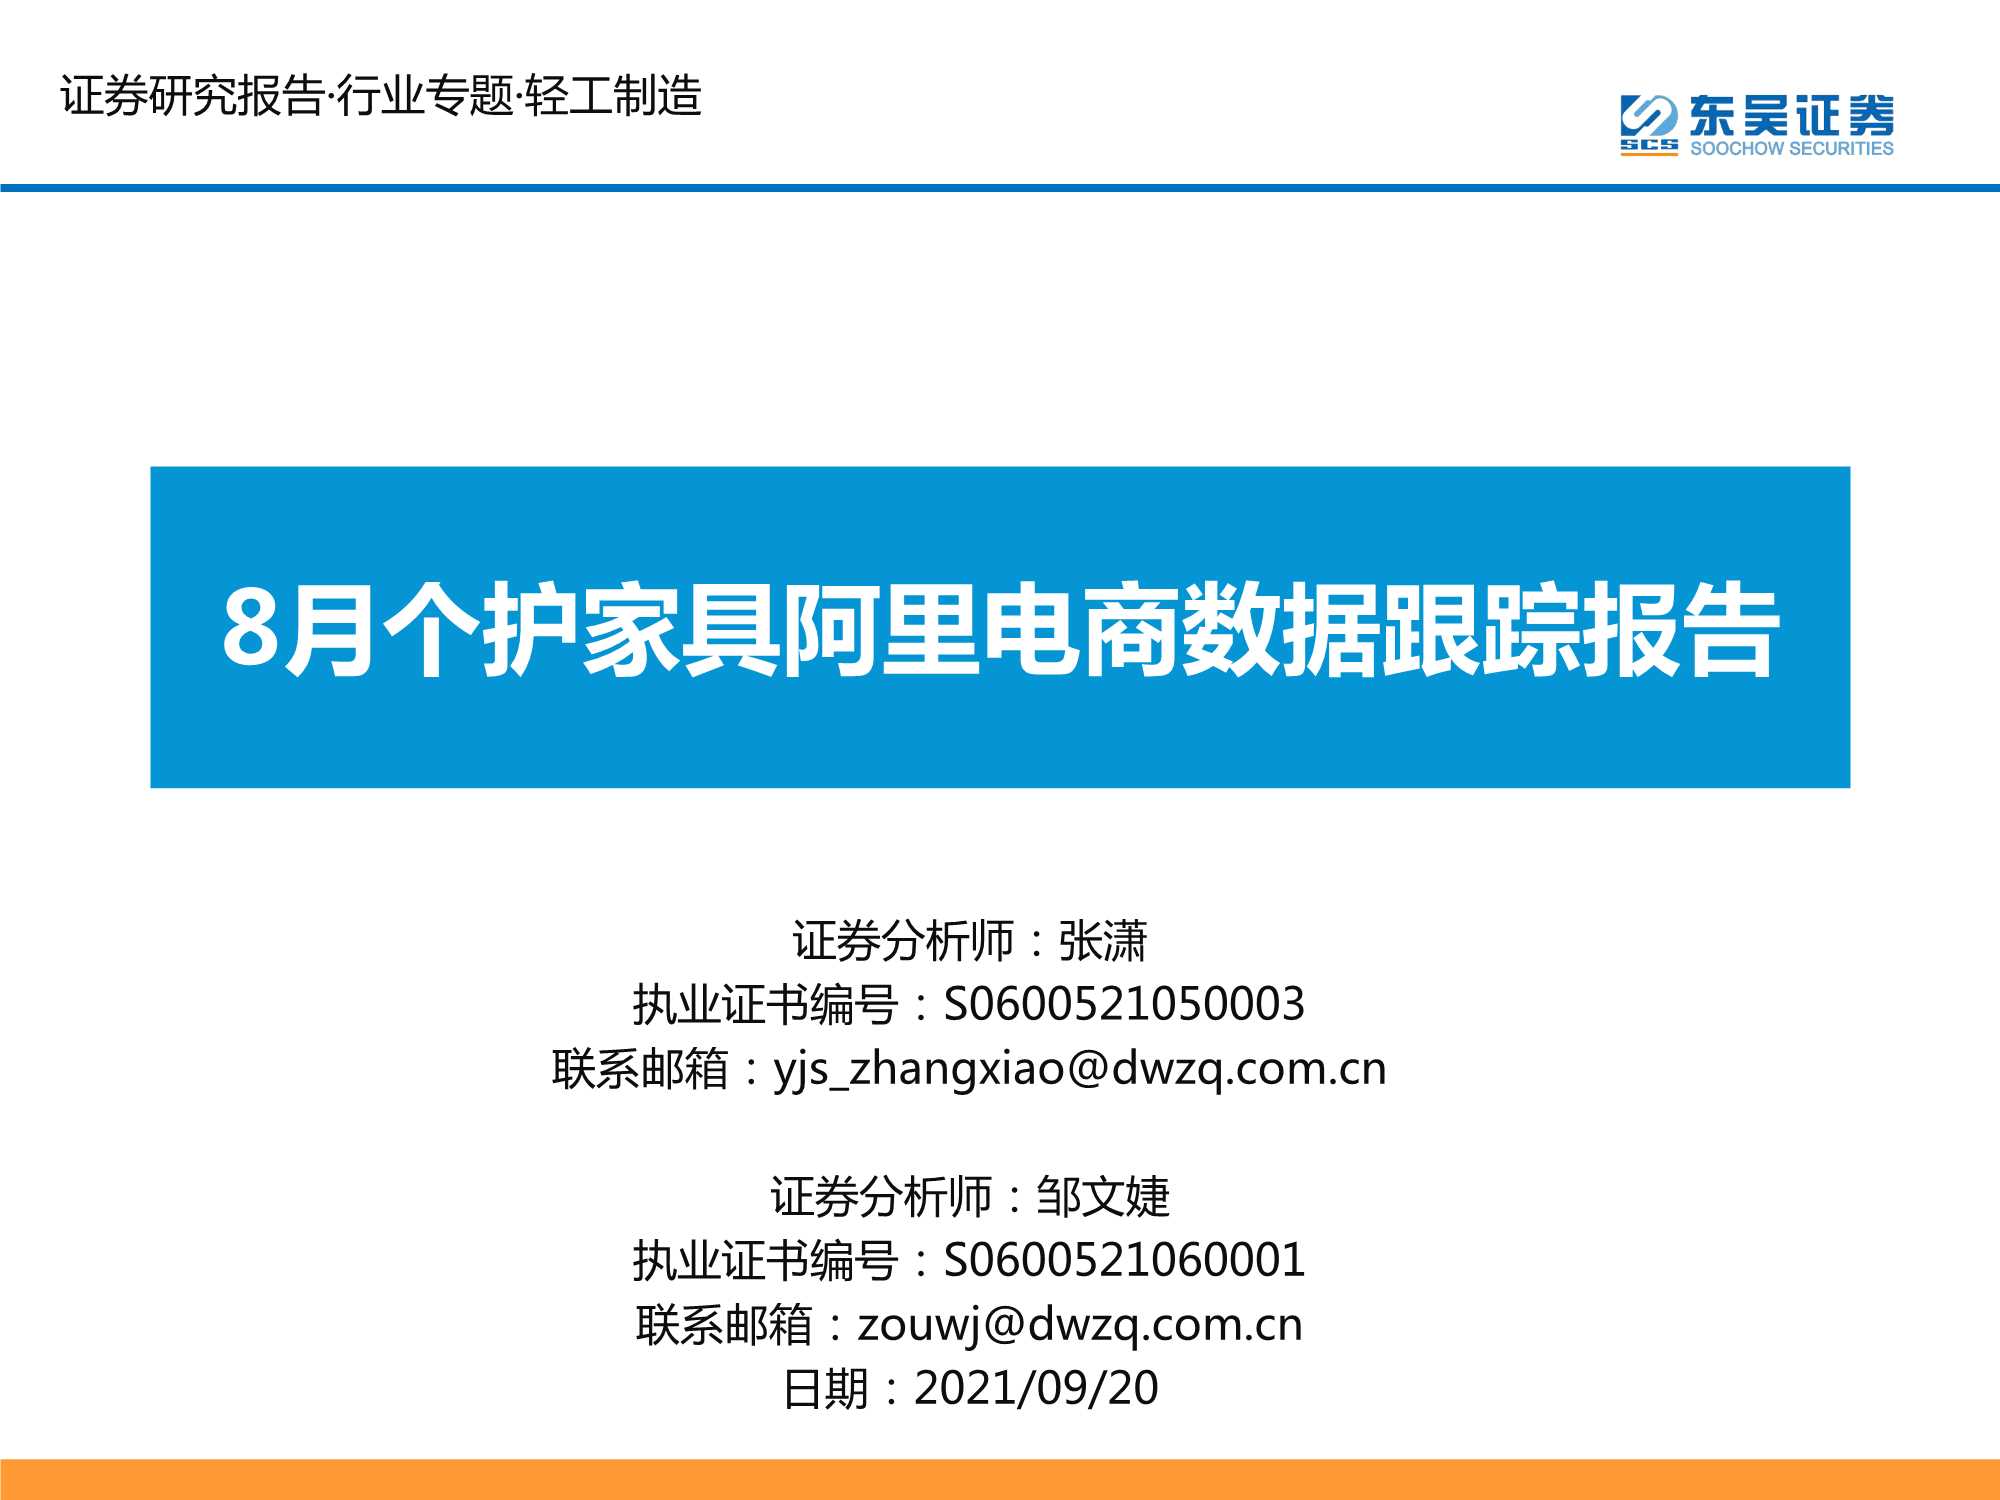 东吴证券-轻工制造行业专题报告：8月个护家具阿里电商数据跟踪报告-20210920-25页